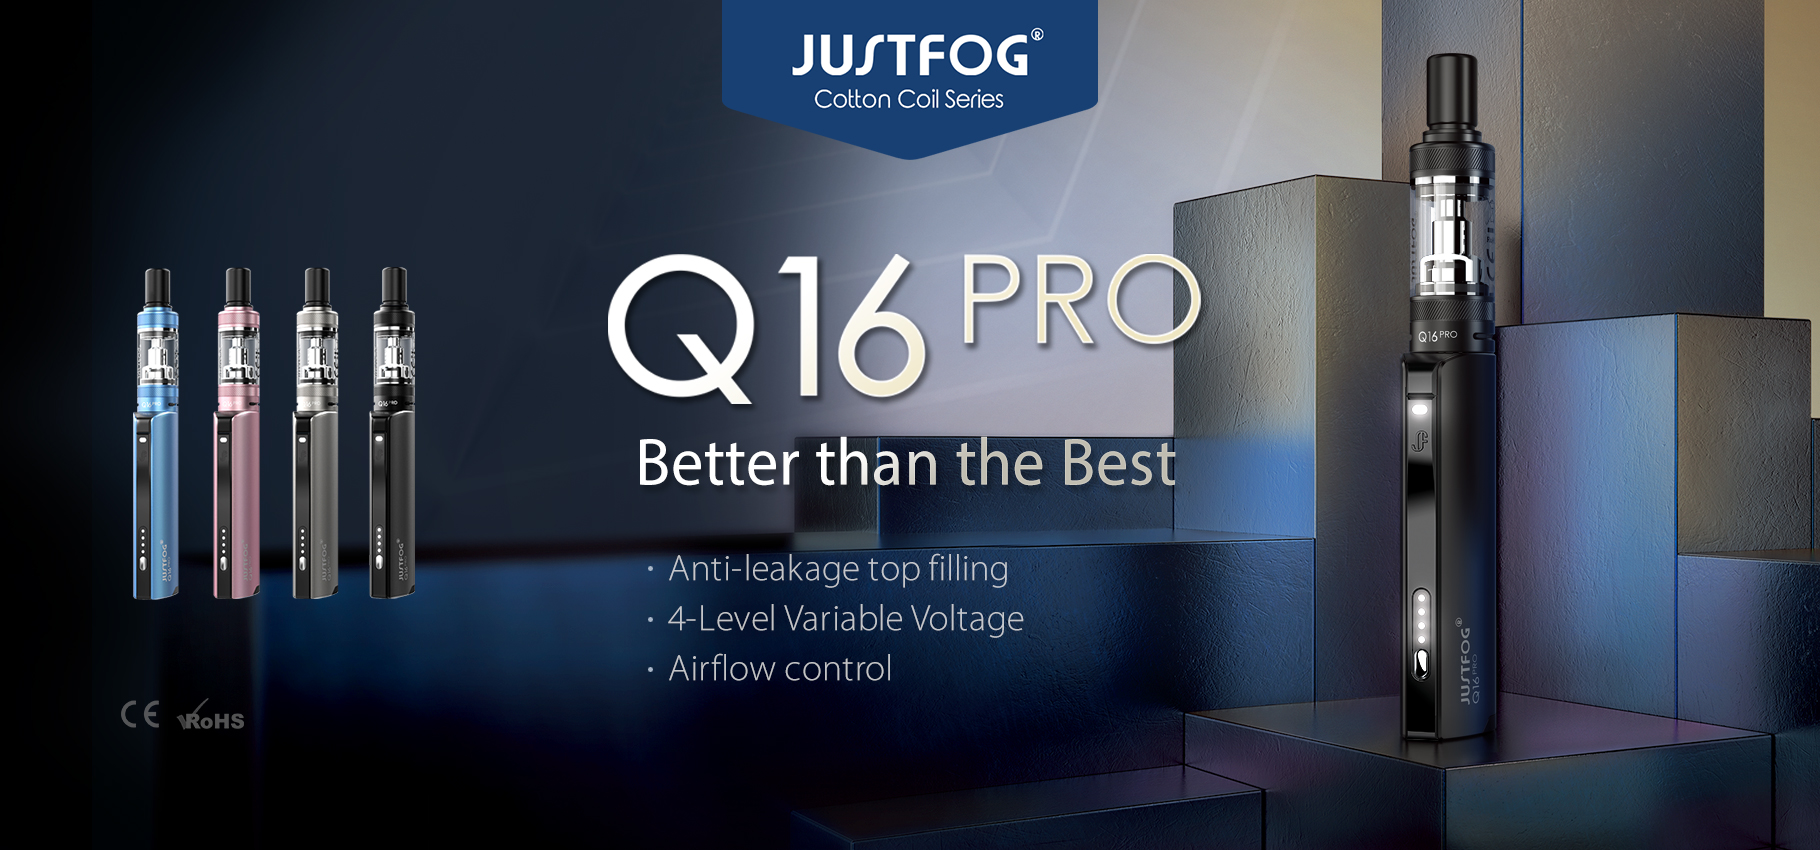 j2 - Justfog Kit Q16 PRO 900mah